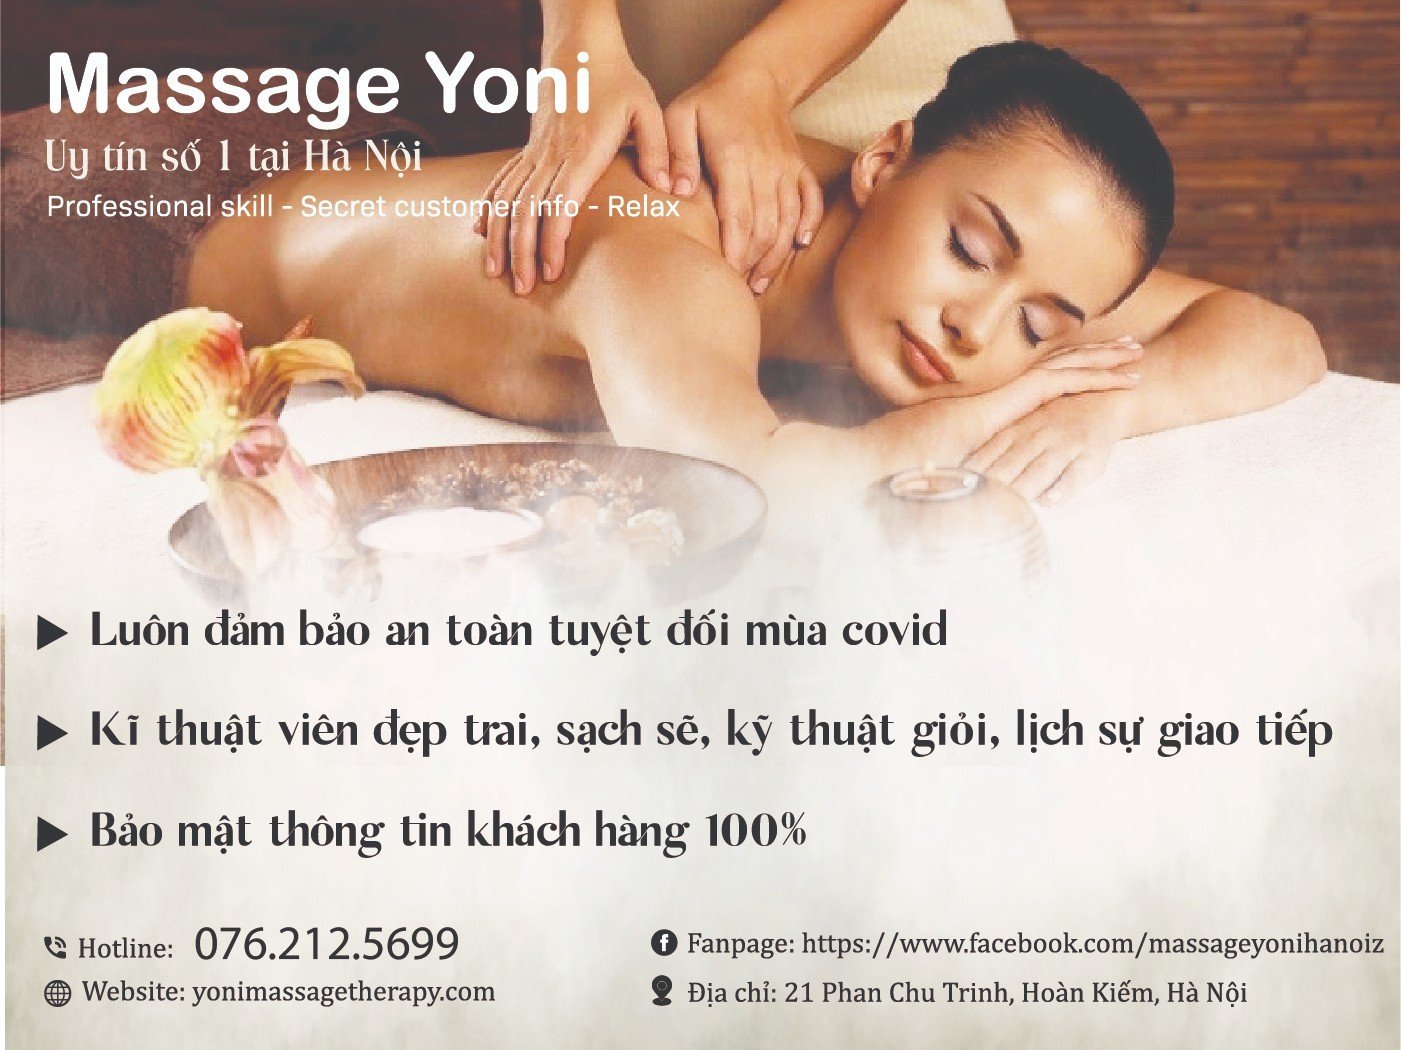 Dịch vụ matxa yoni tại Yoni massage therapy